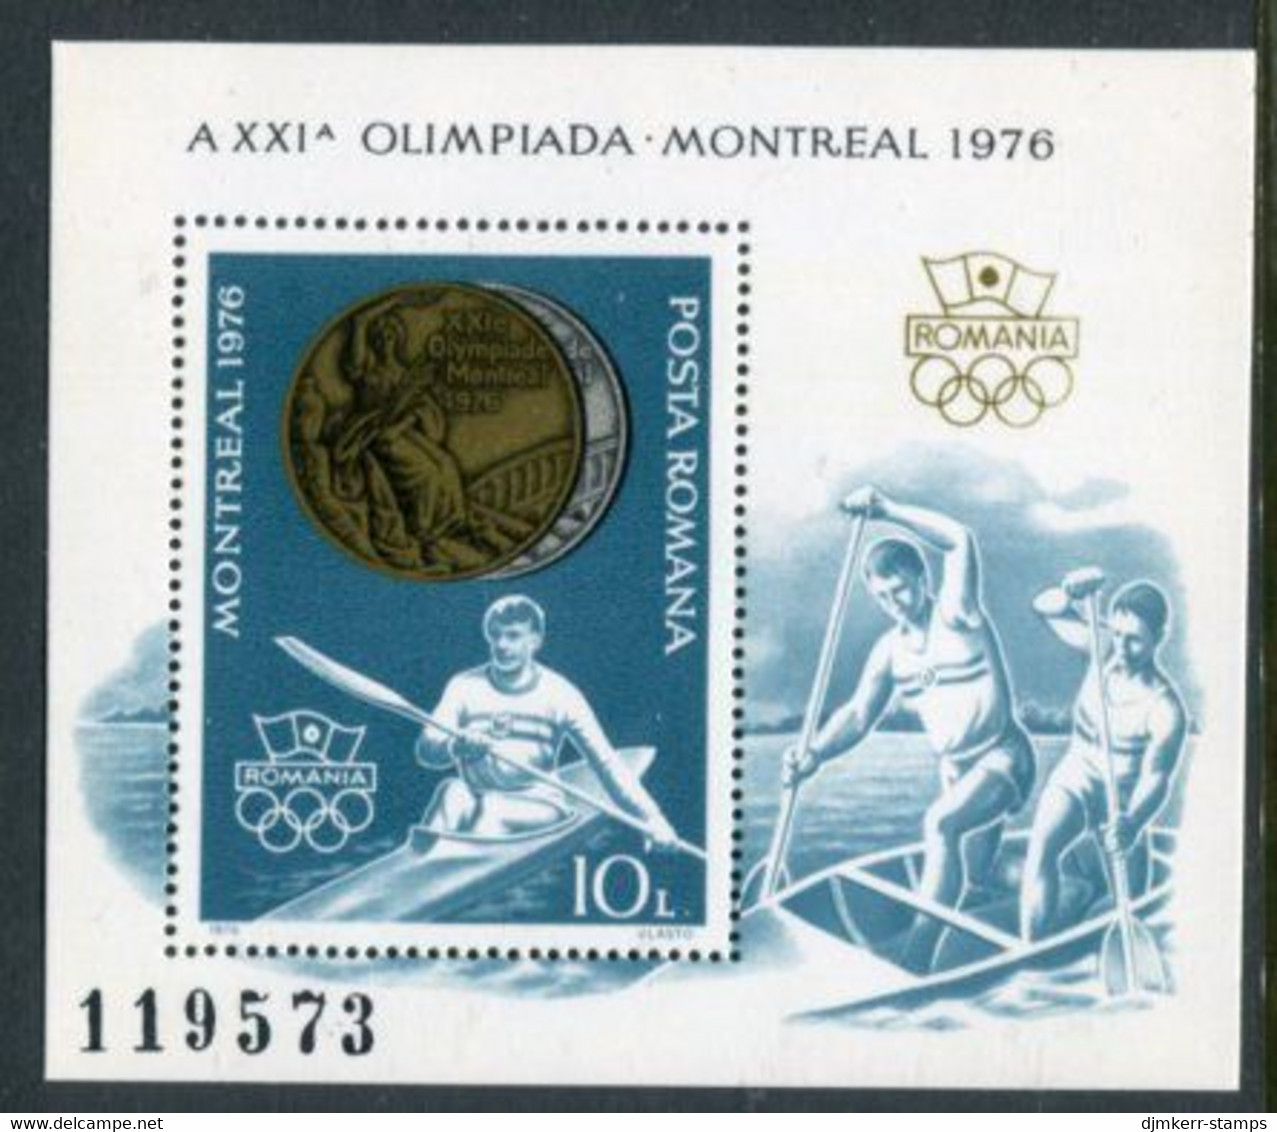 ROMANIA 1976 Olympic Medal Winners Block MNH  / **.  Michel Block 137 - Ongebruikt